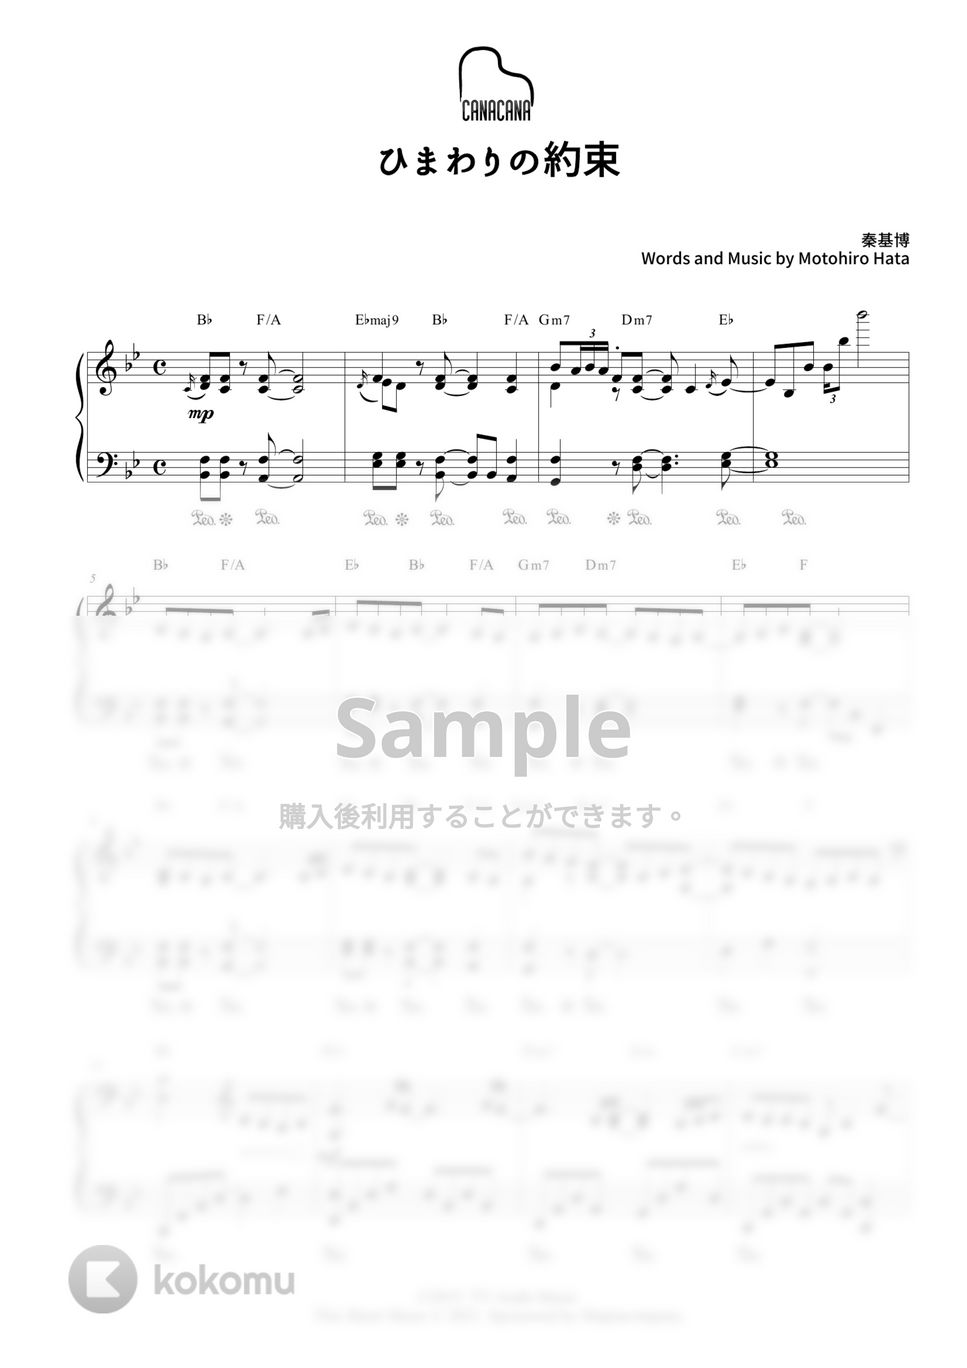 秦基博 - ひまわりの約束 by CANACANA family